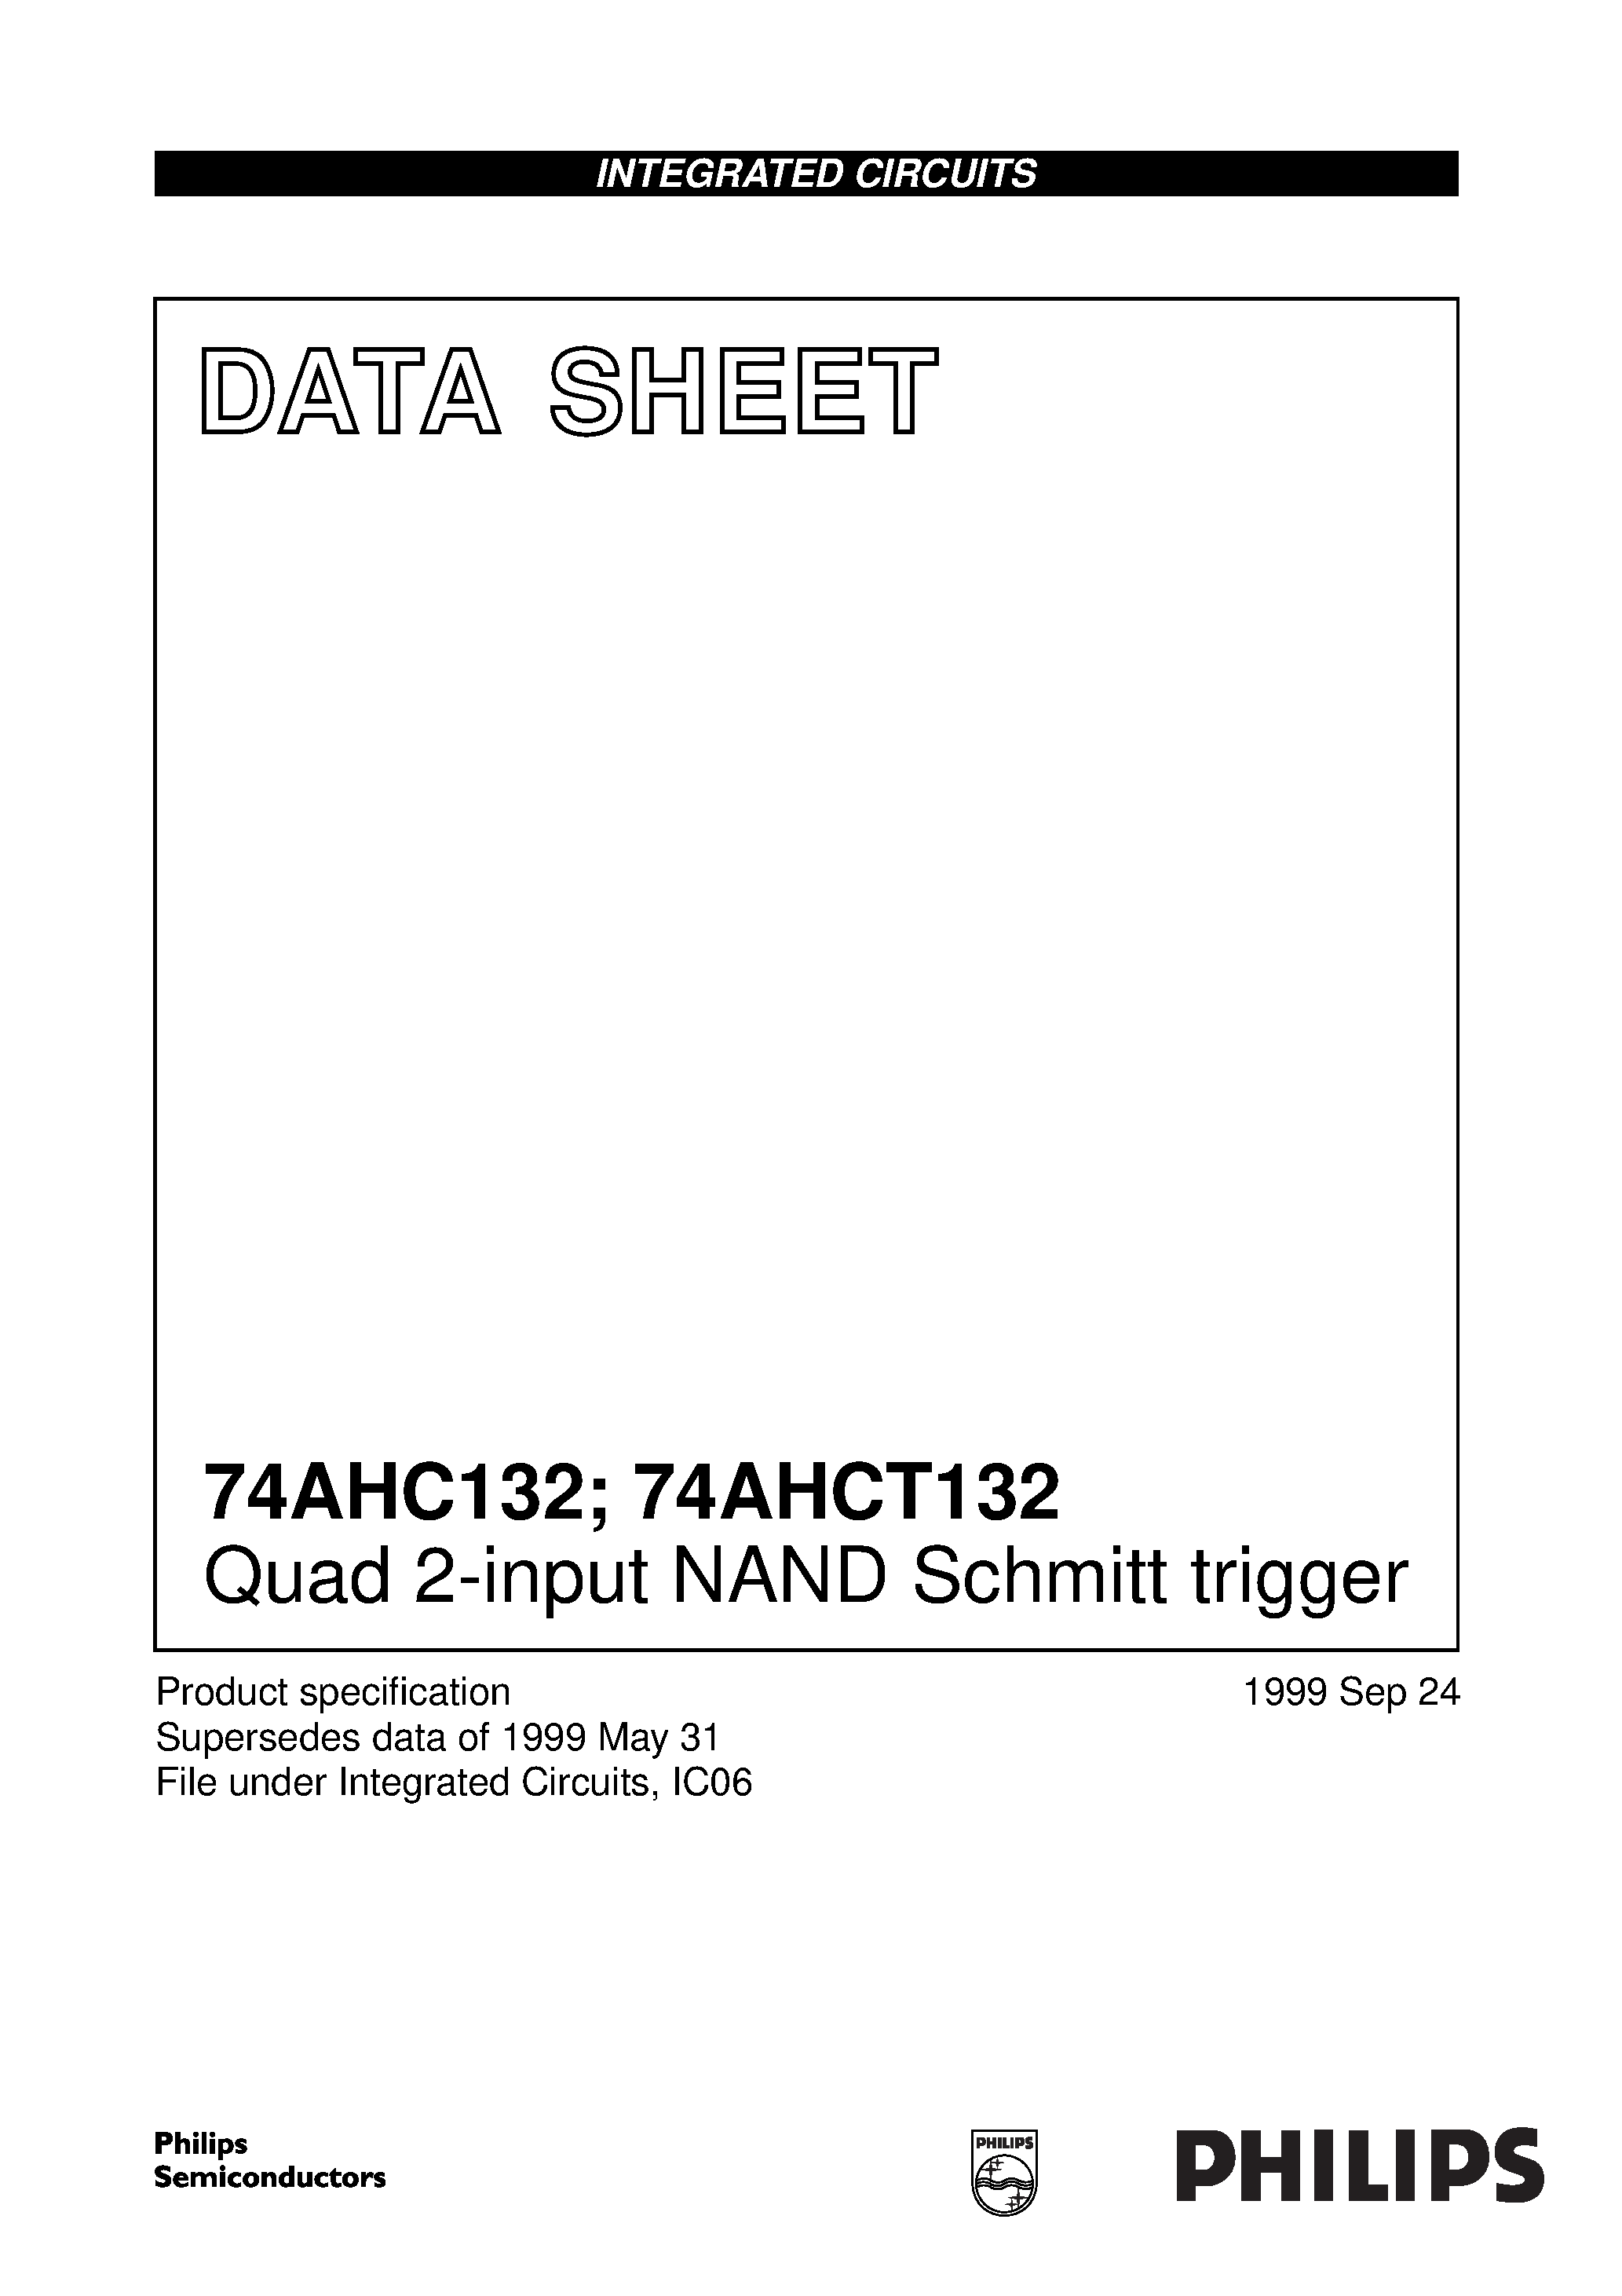 Datasheet 74AHC132PWDH - Quad 2-input NAND Schmitt trigger page 1